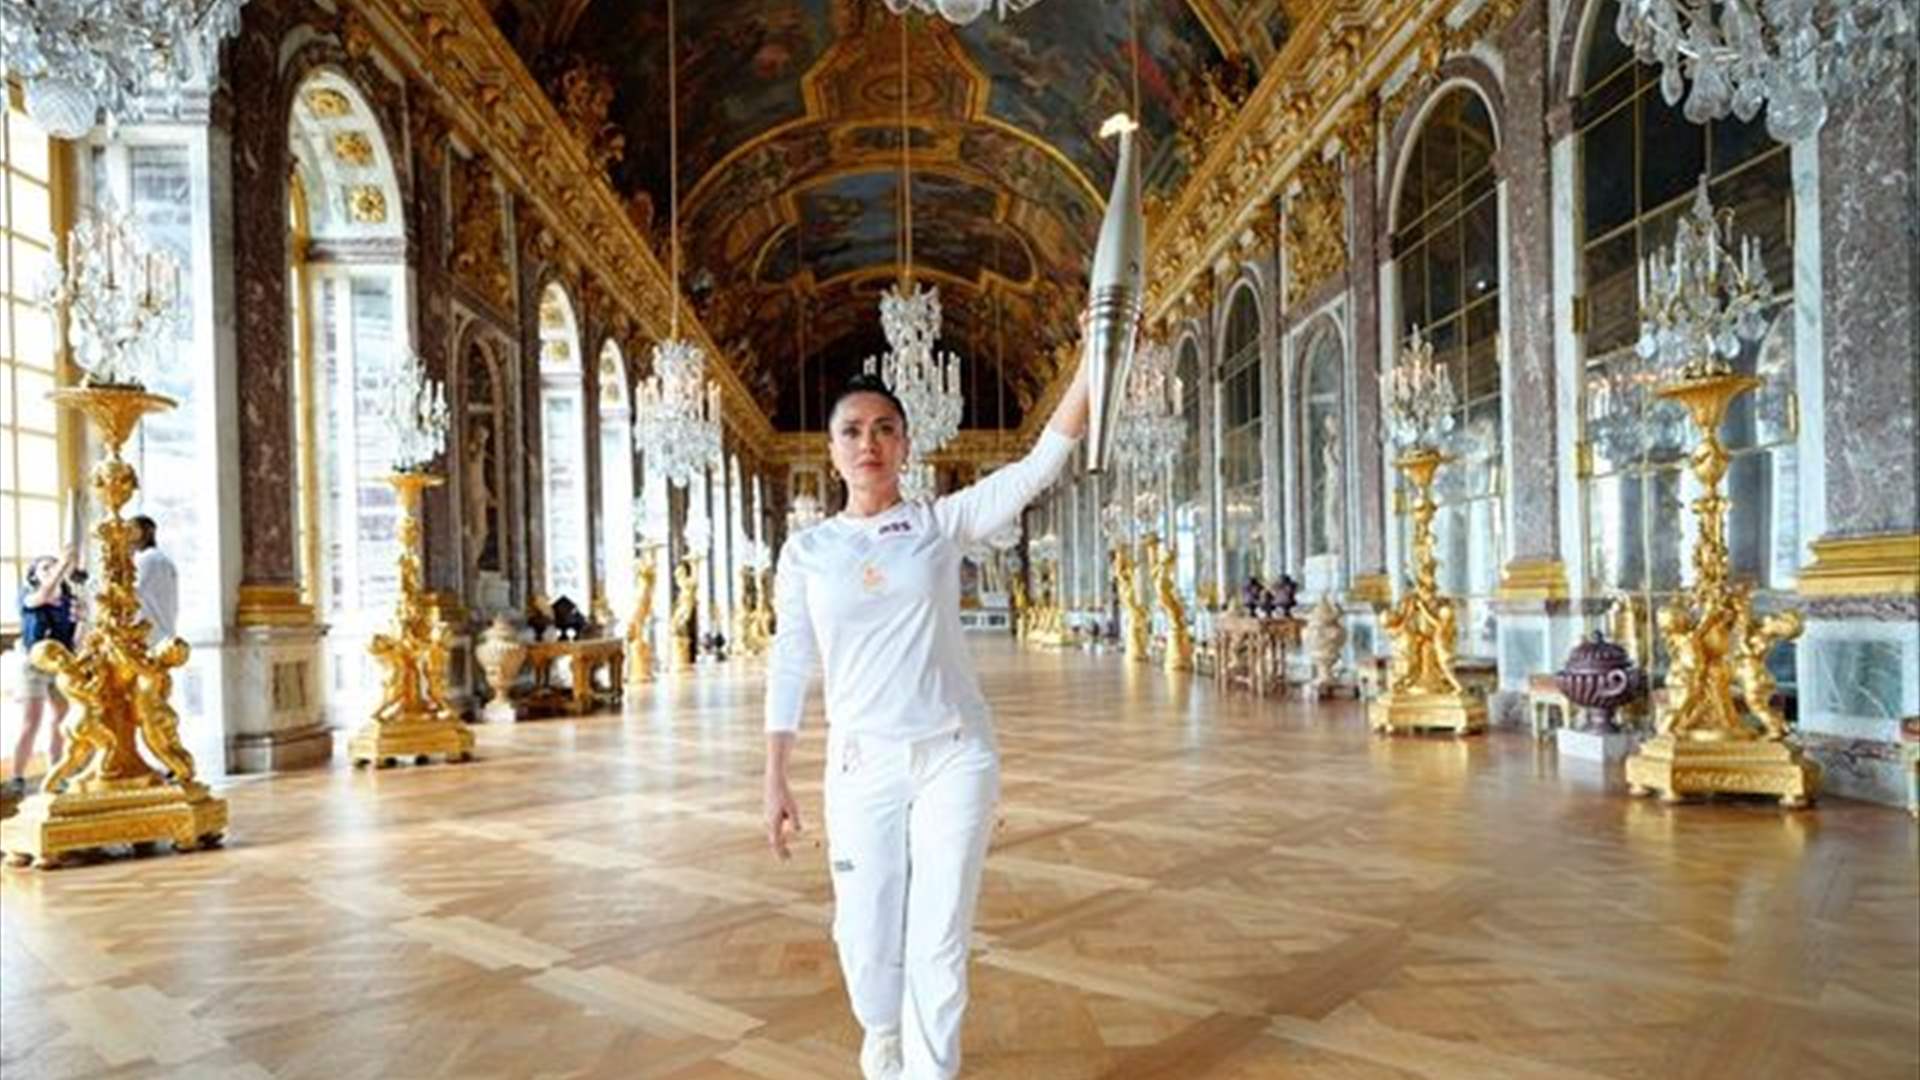 سلمى حايك تحمل الشعلة الأولمبية في قصر فرساي... كيف وصفت هذه التجربة؟ (صور وفيديو)